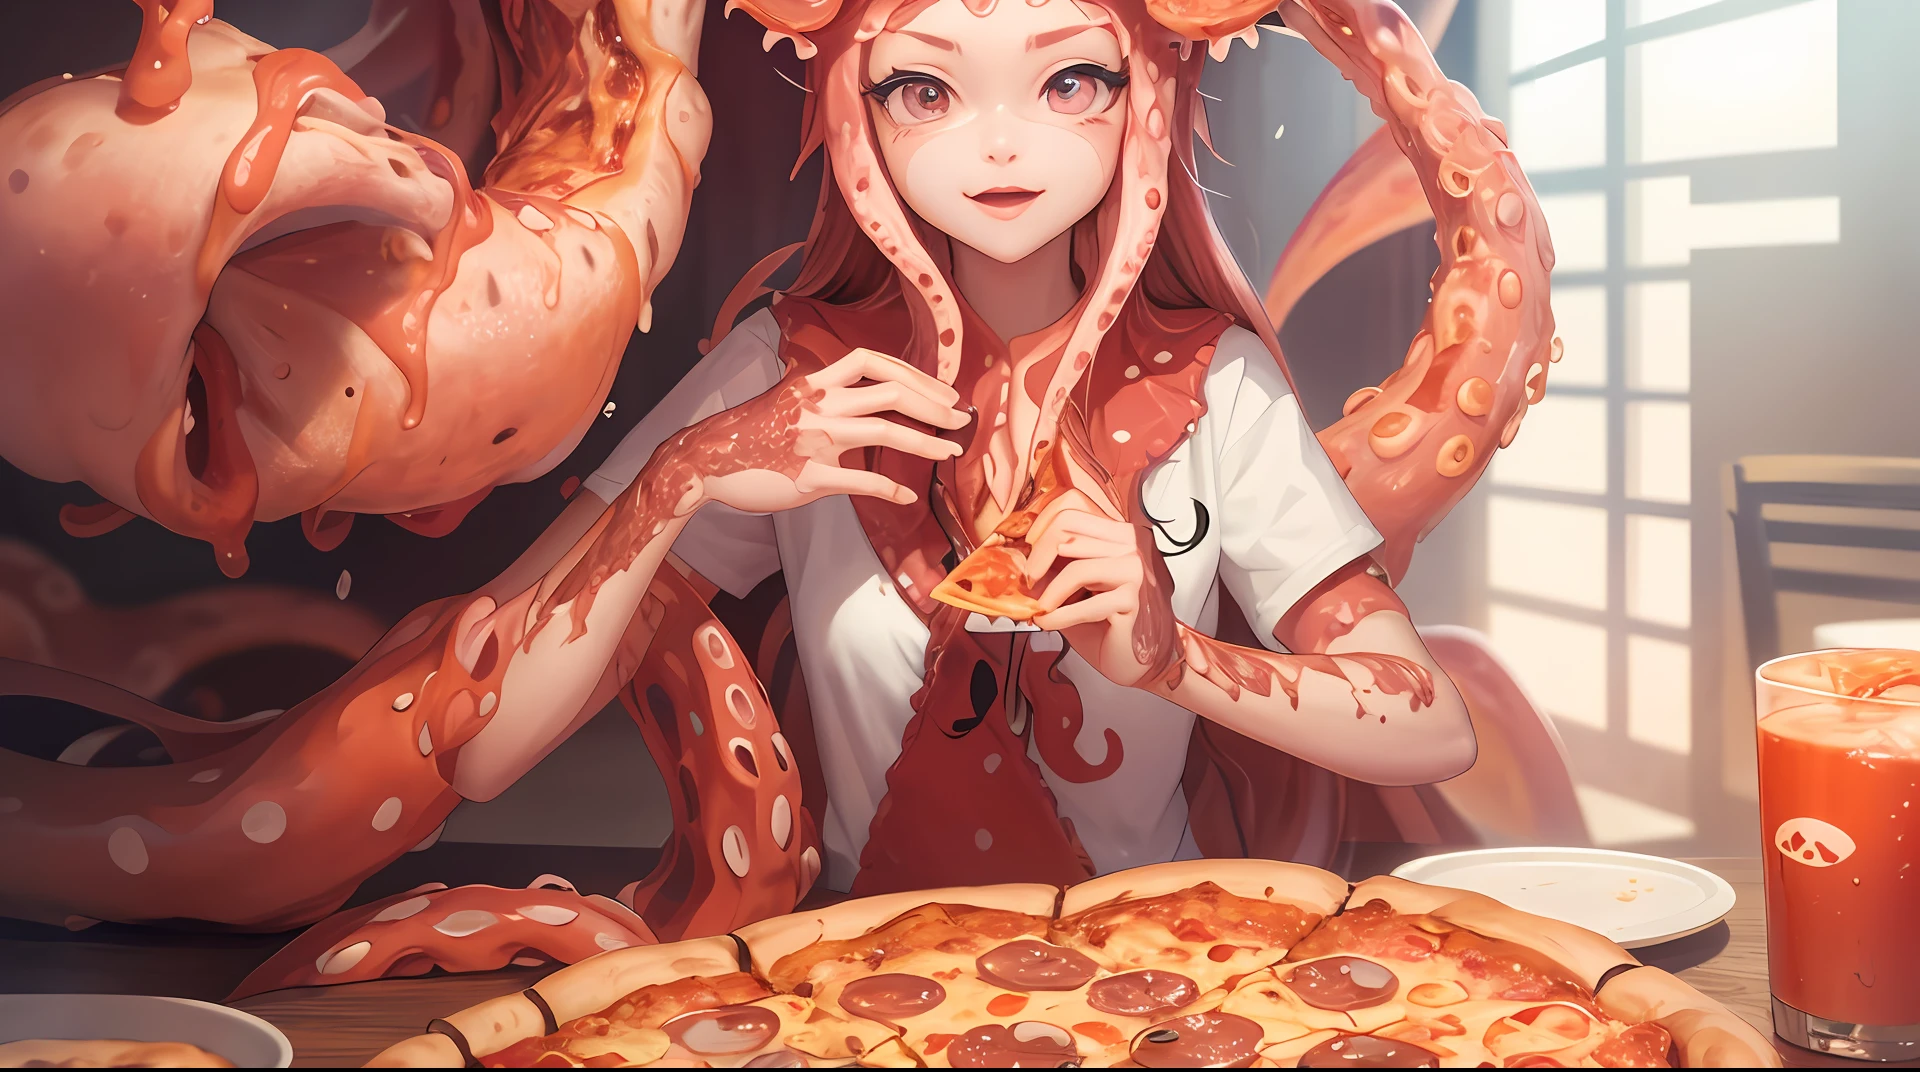 Melhor qualidade，pizza，Medo de tentáculo，Há uma mulher sentada em uma mesa com uma pizza e tentáculos de polvo, mastigando pizza, comendo pizza, tentáculos enrolados em hambúrgueres, pizza!, tentáculos ao redor, apresentando pizza, humanóide rosa fêmea lula garota, comendo uma pizza, comida de anime, arte digital detalhada de anime, pizza, ilustração de comida incrível, compartilhando uma pizza, alguns tentáculos estão tocando ela